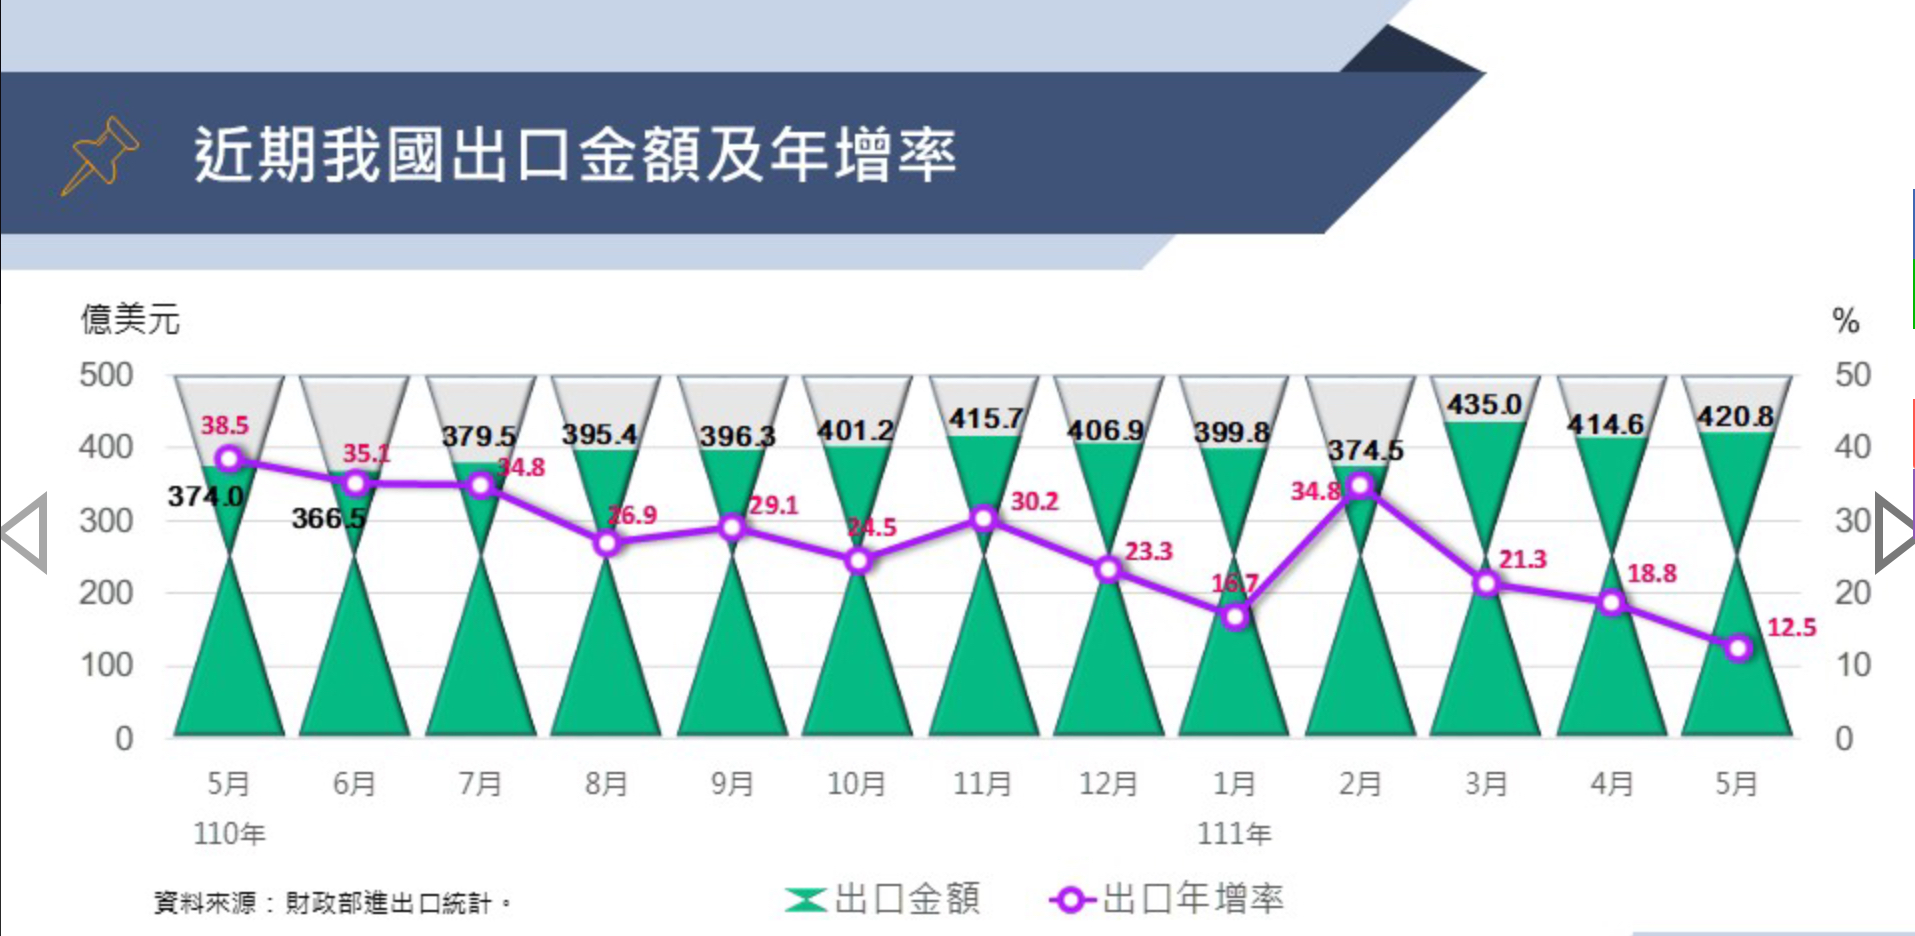 台湾経済:111年4月景気概要プレスリリース